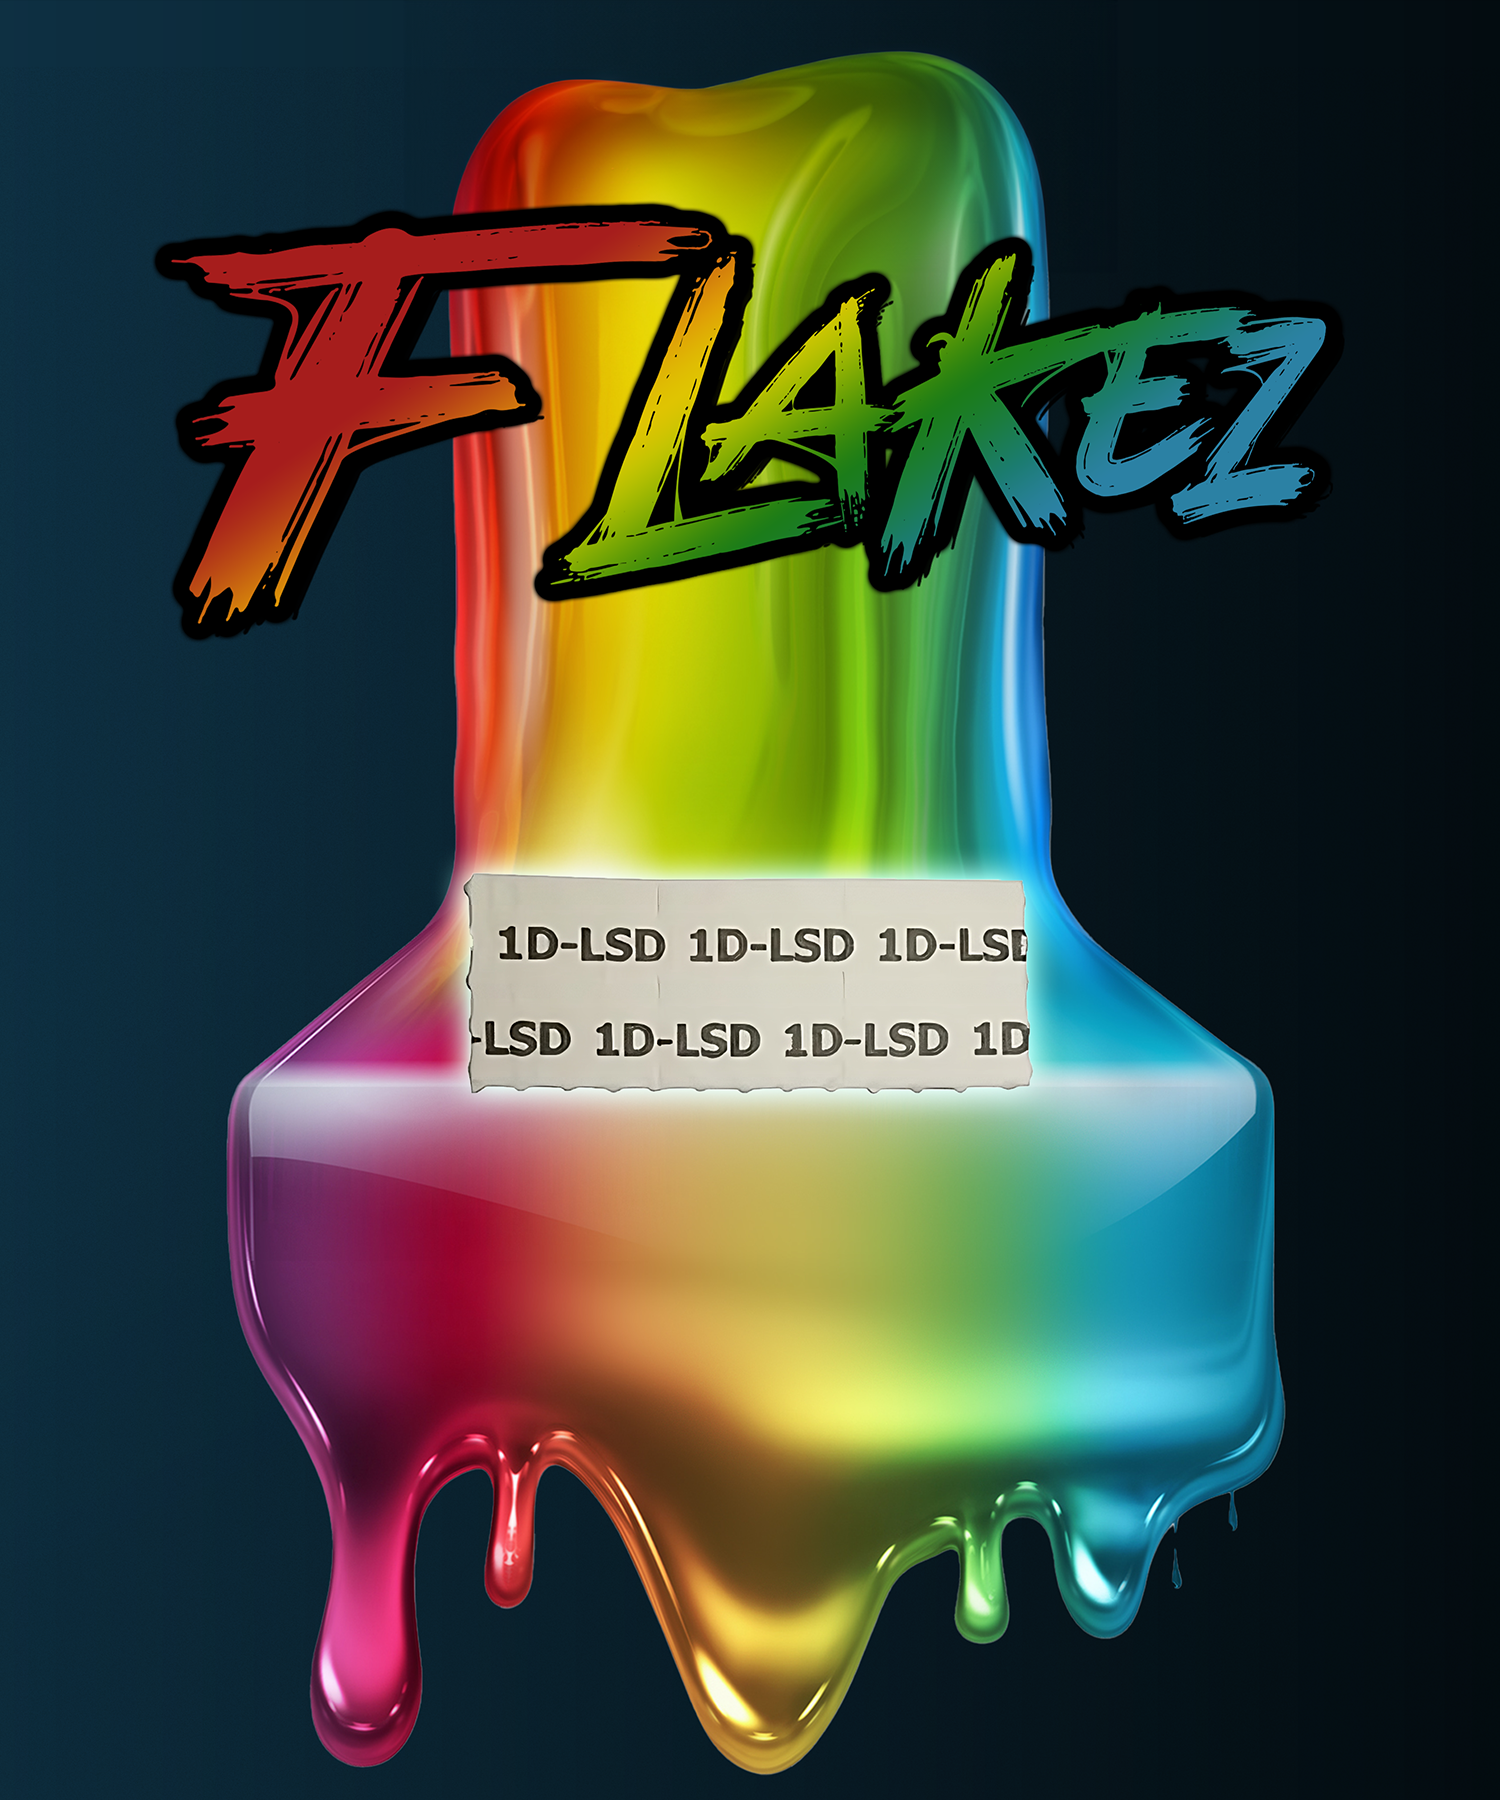 FLAKEZ - 150mcg 1D-LSD